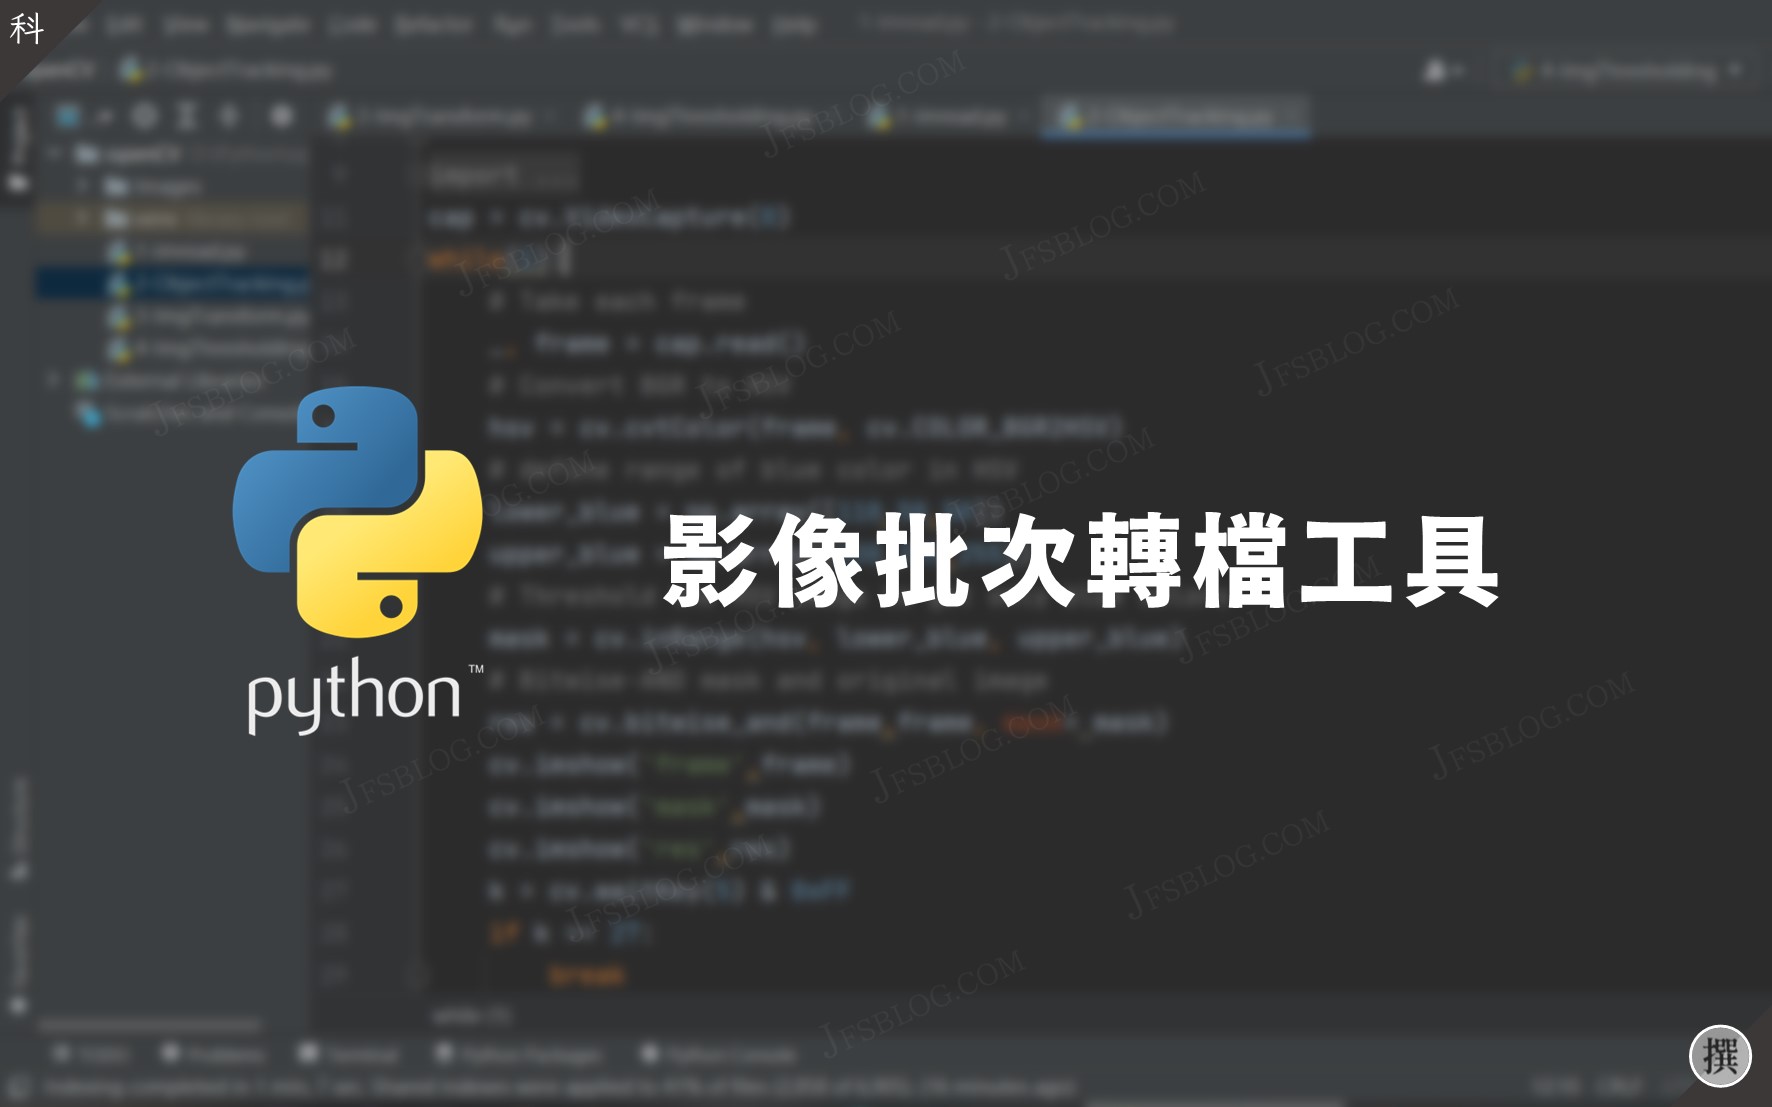 Python／如何用Python寫一個簡易的相片批次轉檔工具？